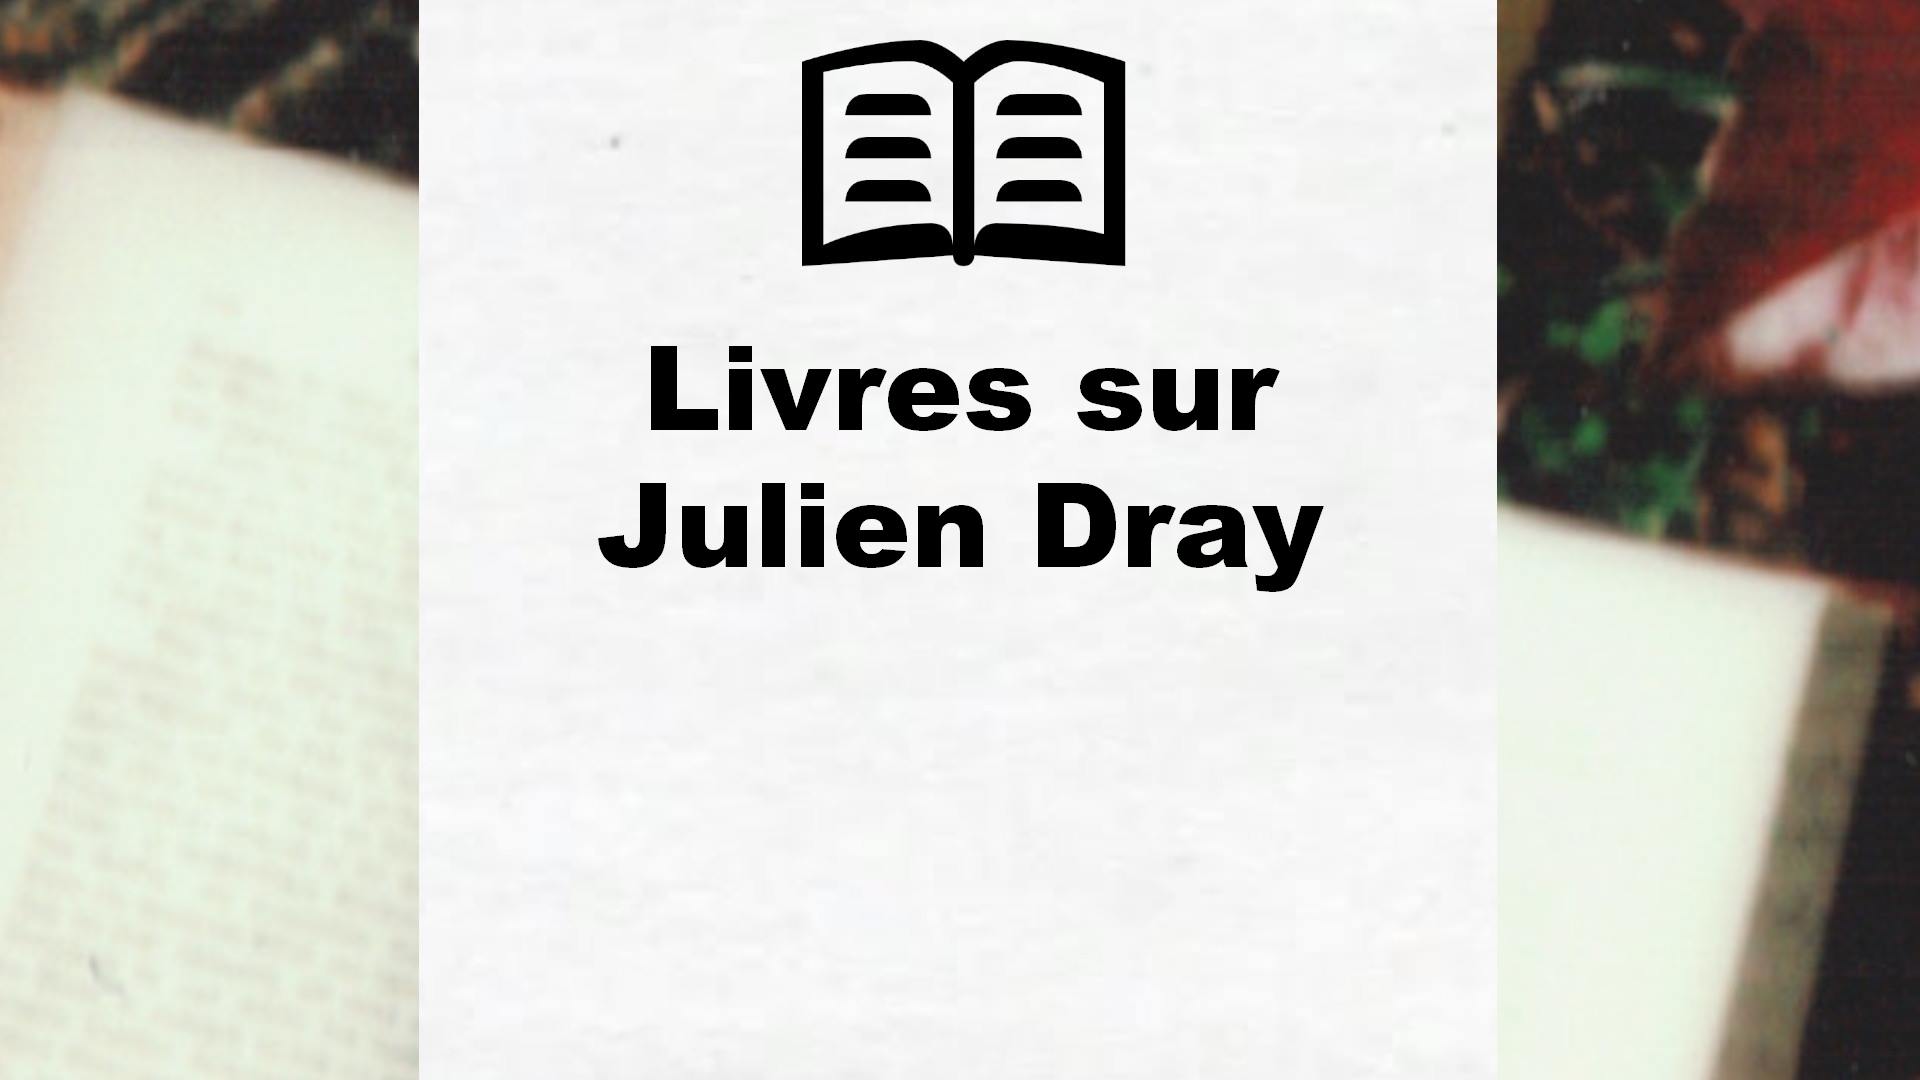 Livres sur Julien Dray